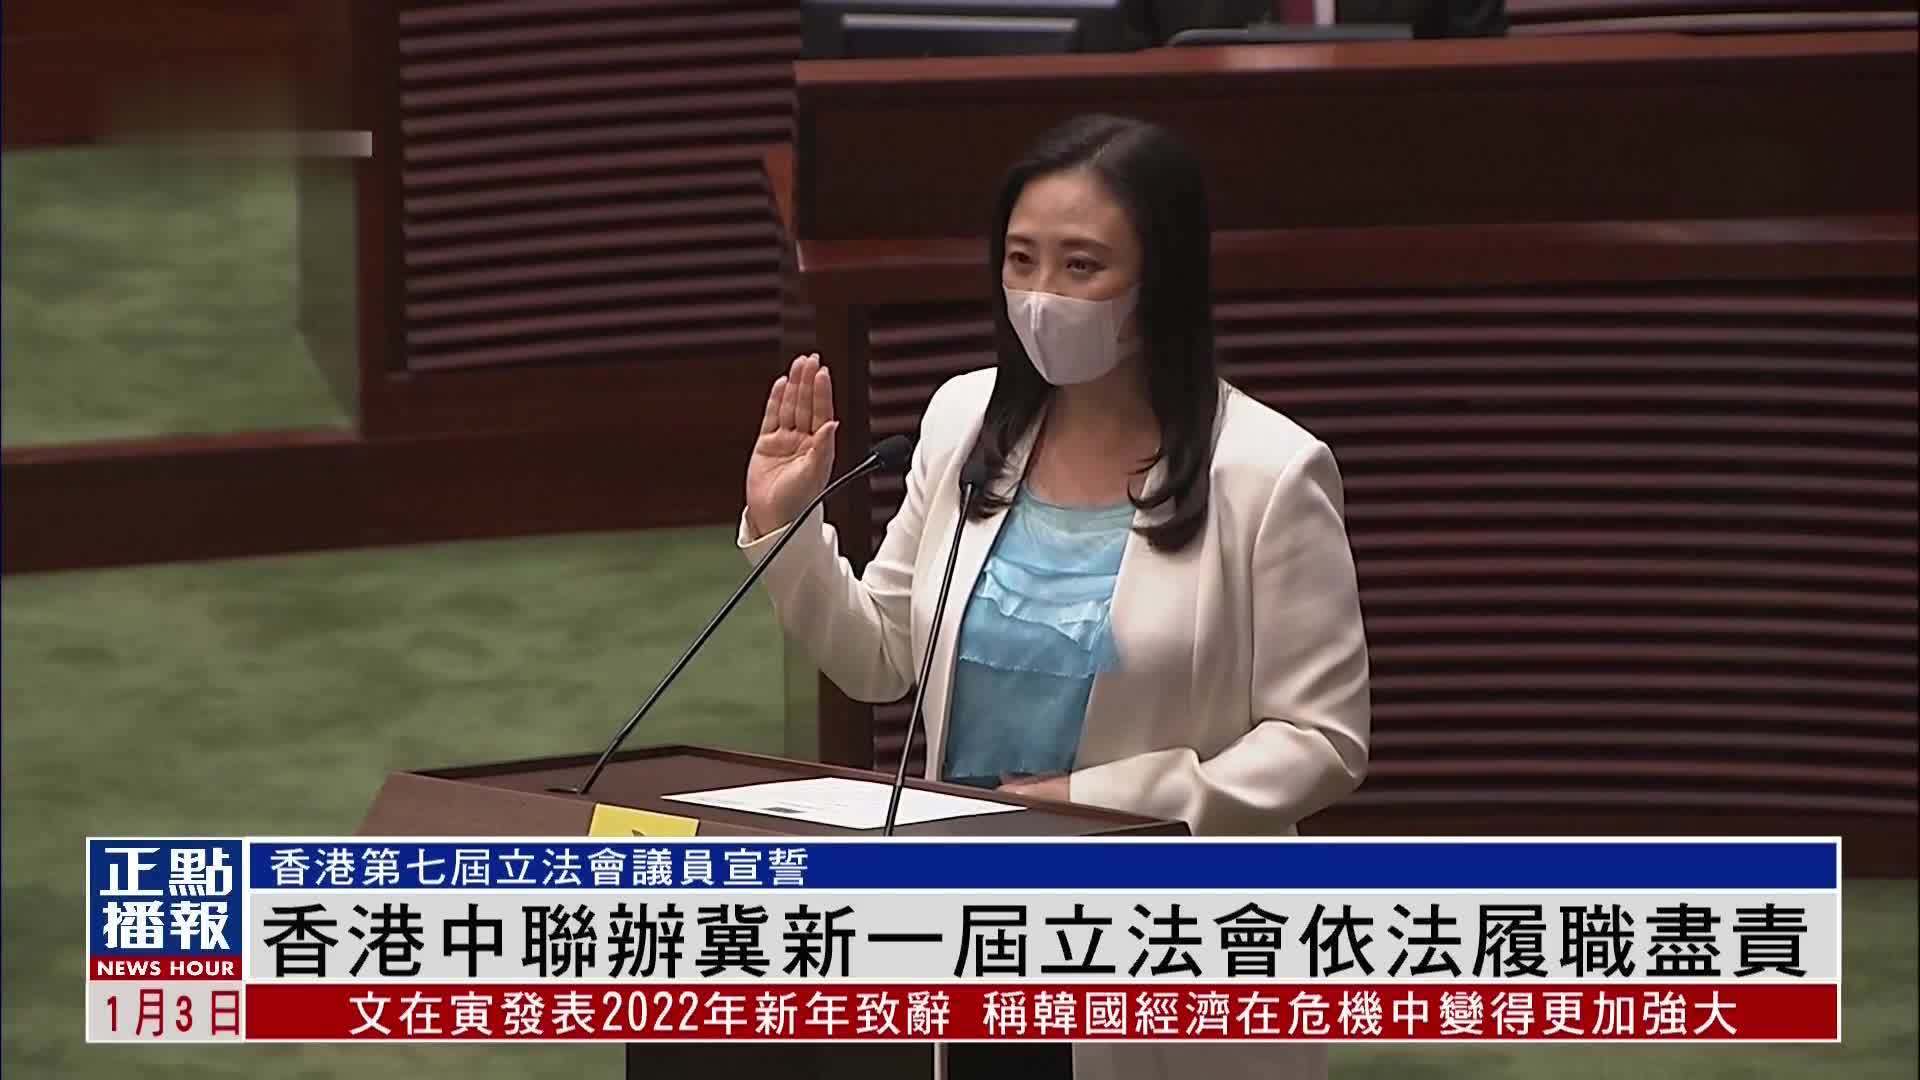 香港中联办发言人:祝贺第七届立法会依法运行 期待香港良政善治新局面